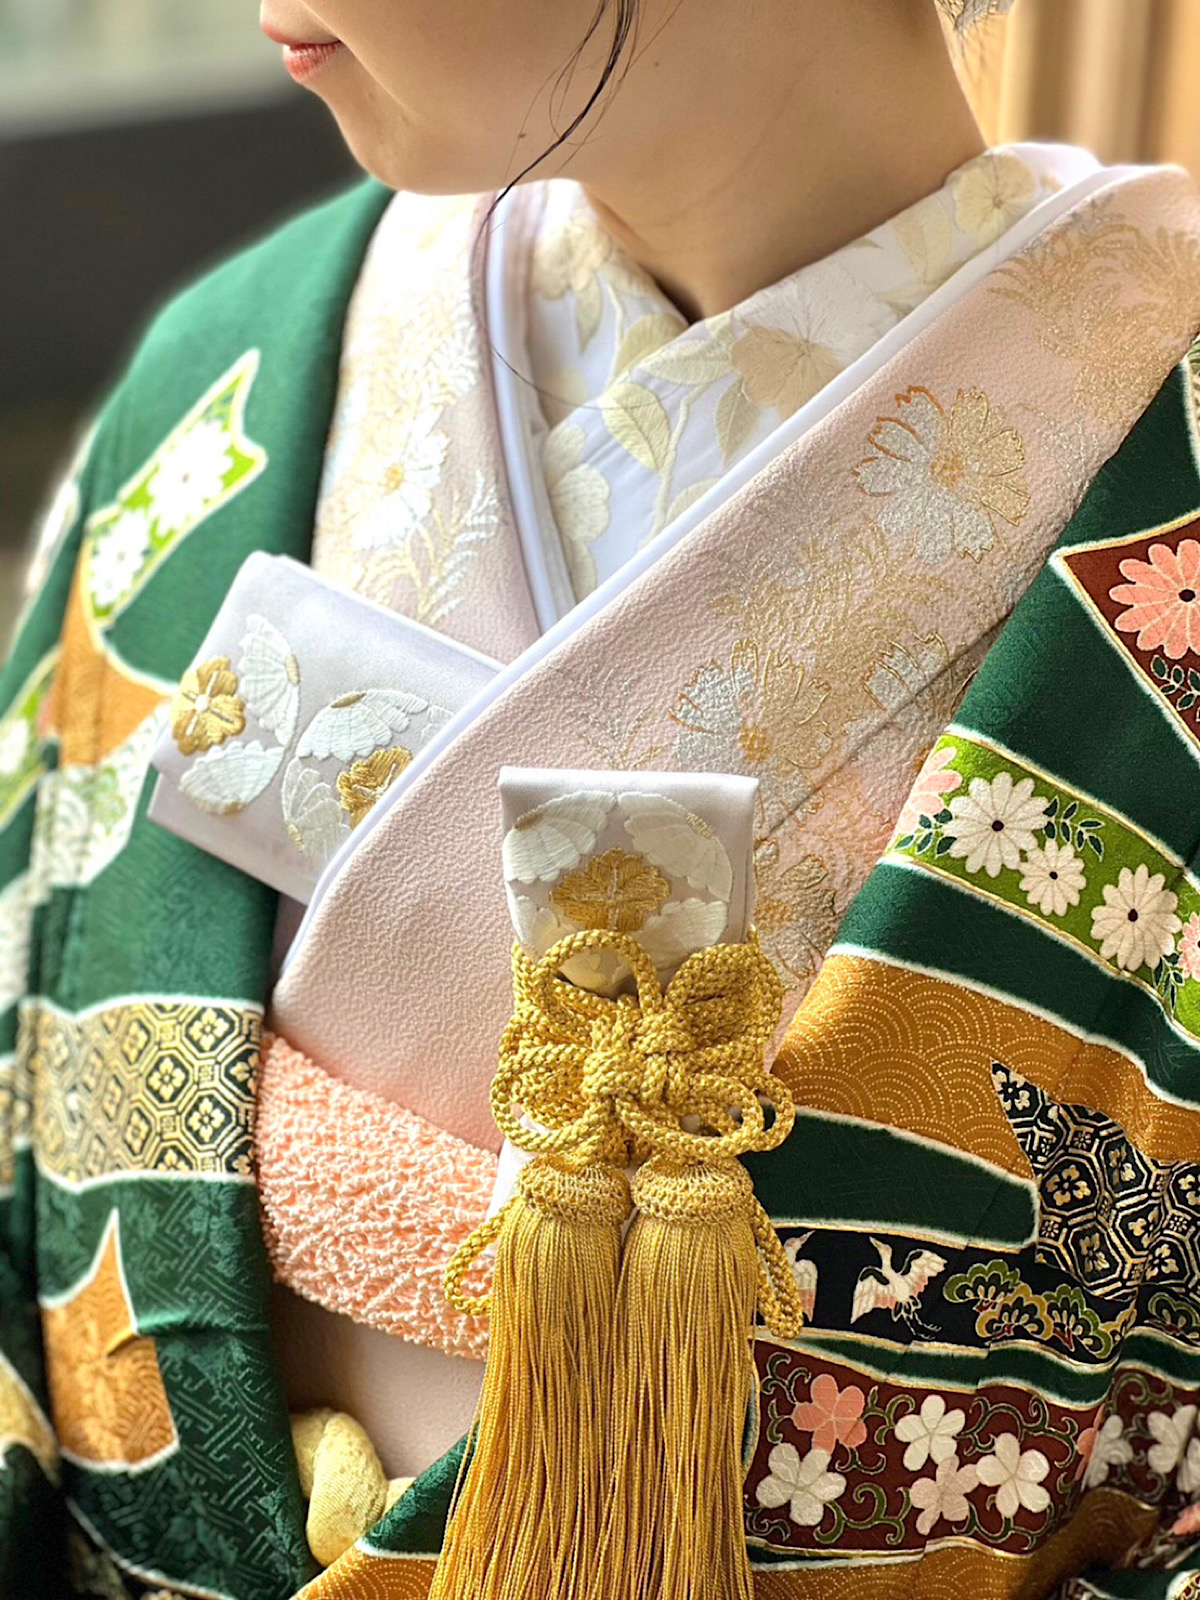 名古屋エリアにおすすめの緑の色打掛に桃色の掛下と金刺繍の小物を合わせた和装コーディネートのご紹介